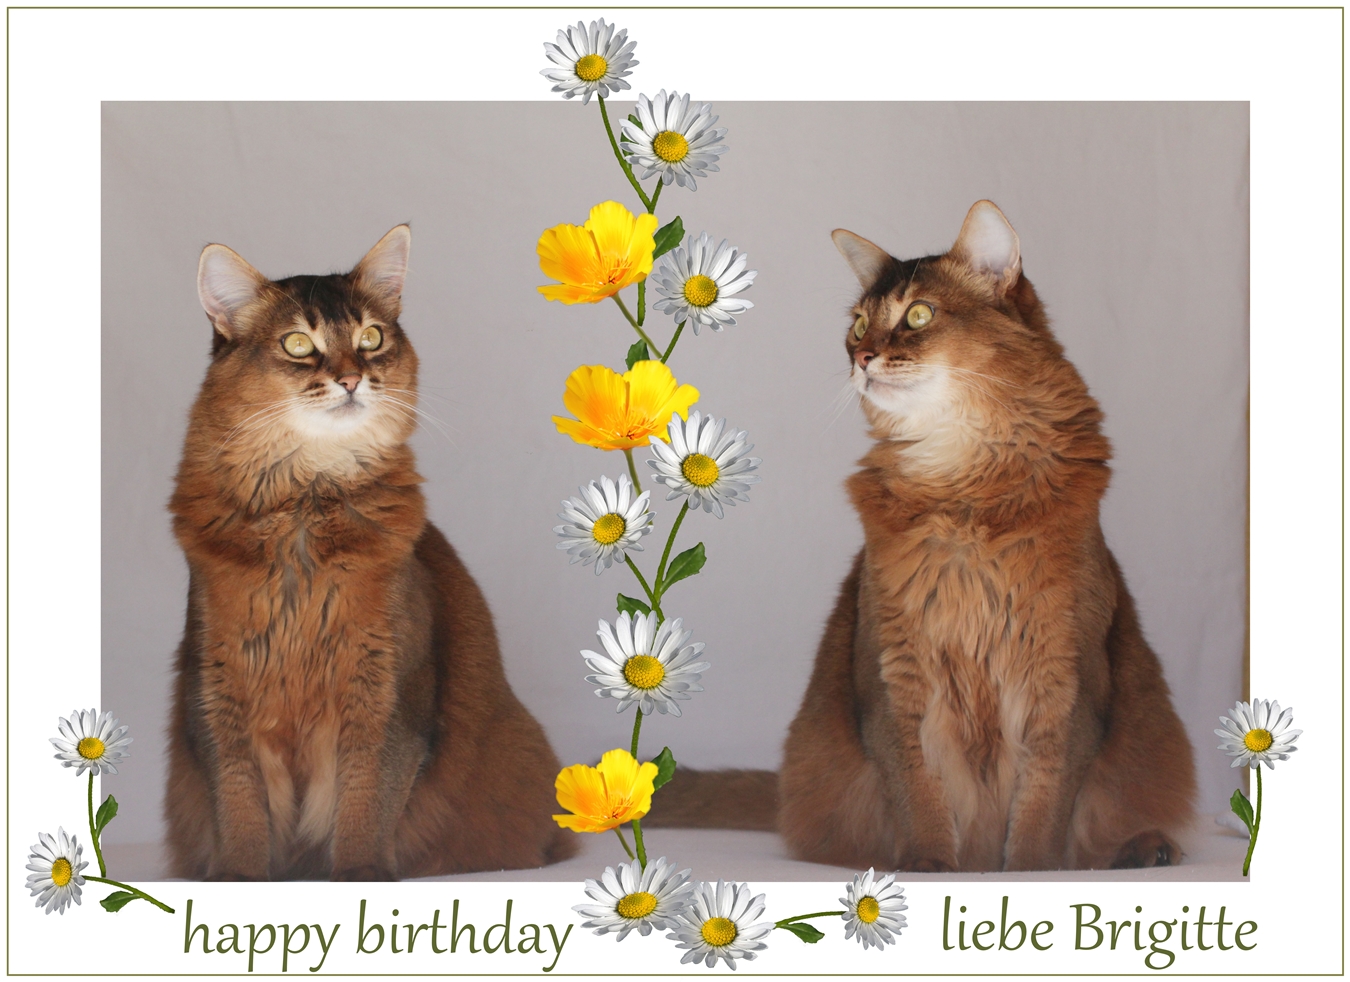 Brigitte hat Geburtstag